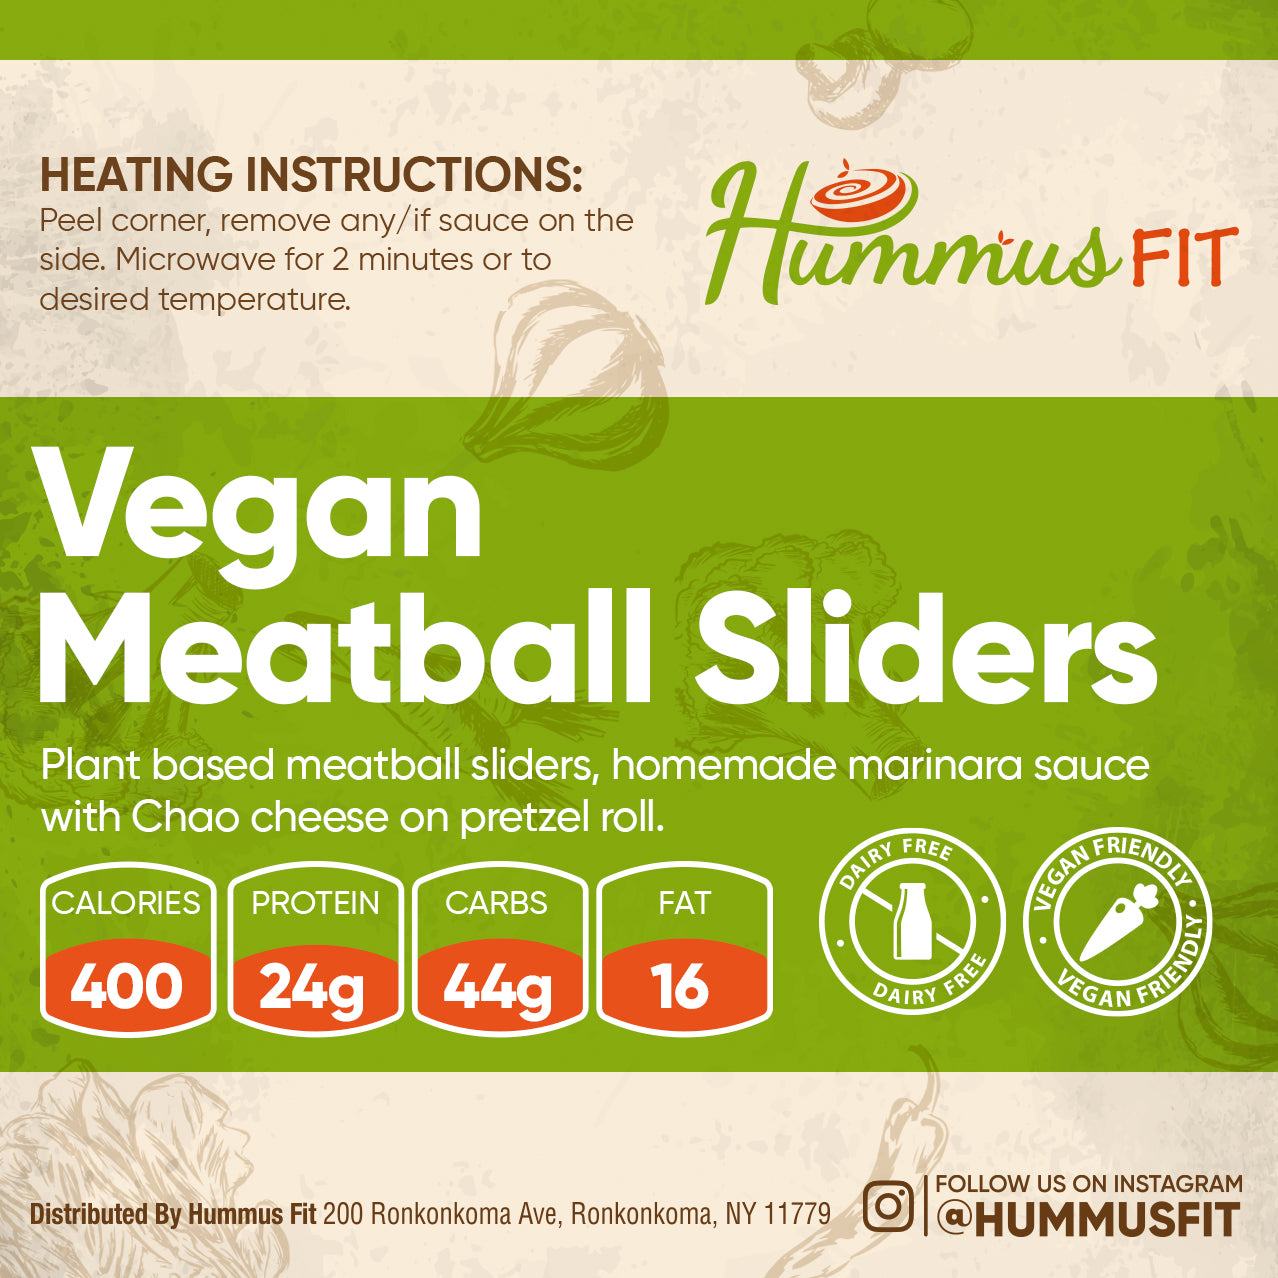 vegan meatballs sliders meal delivery service